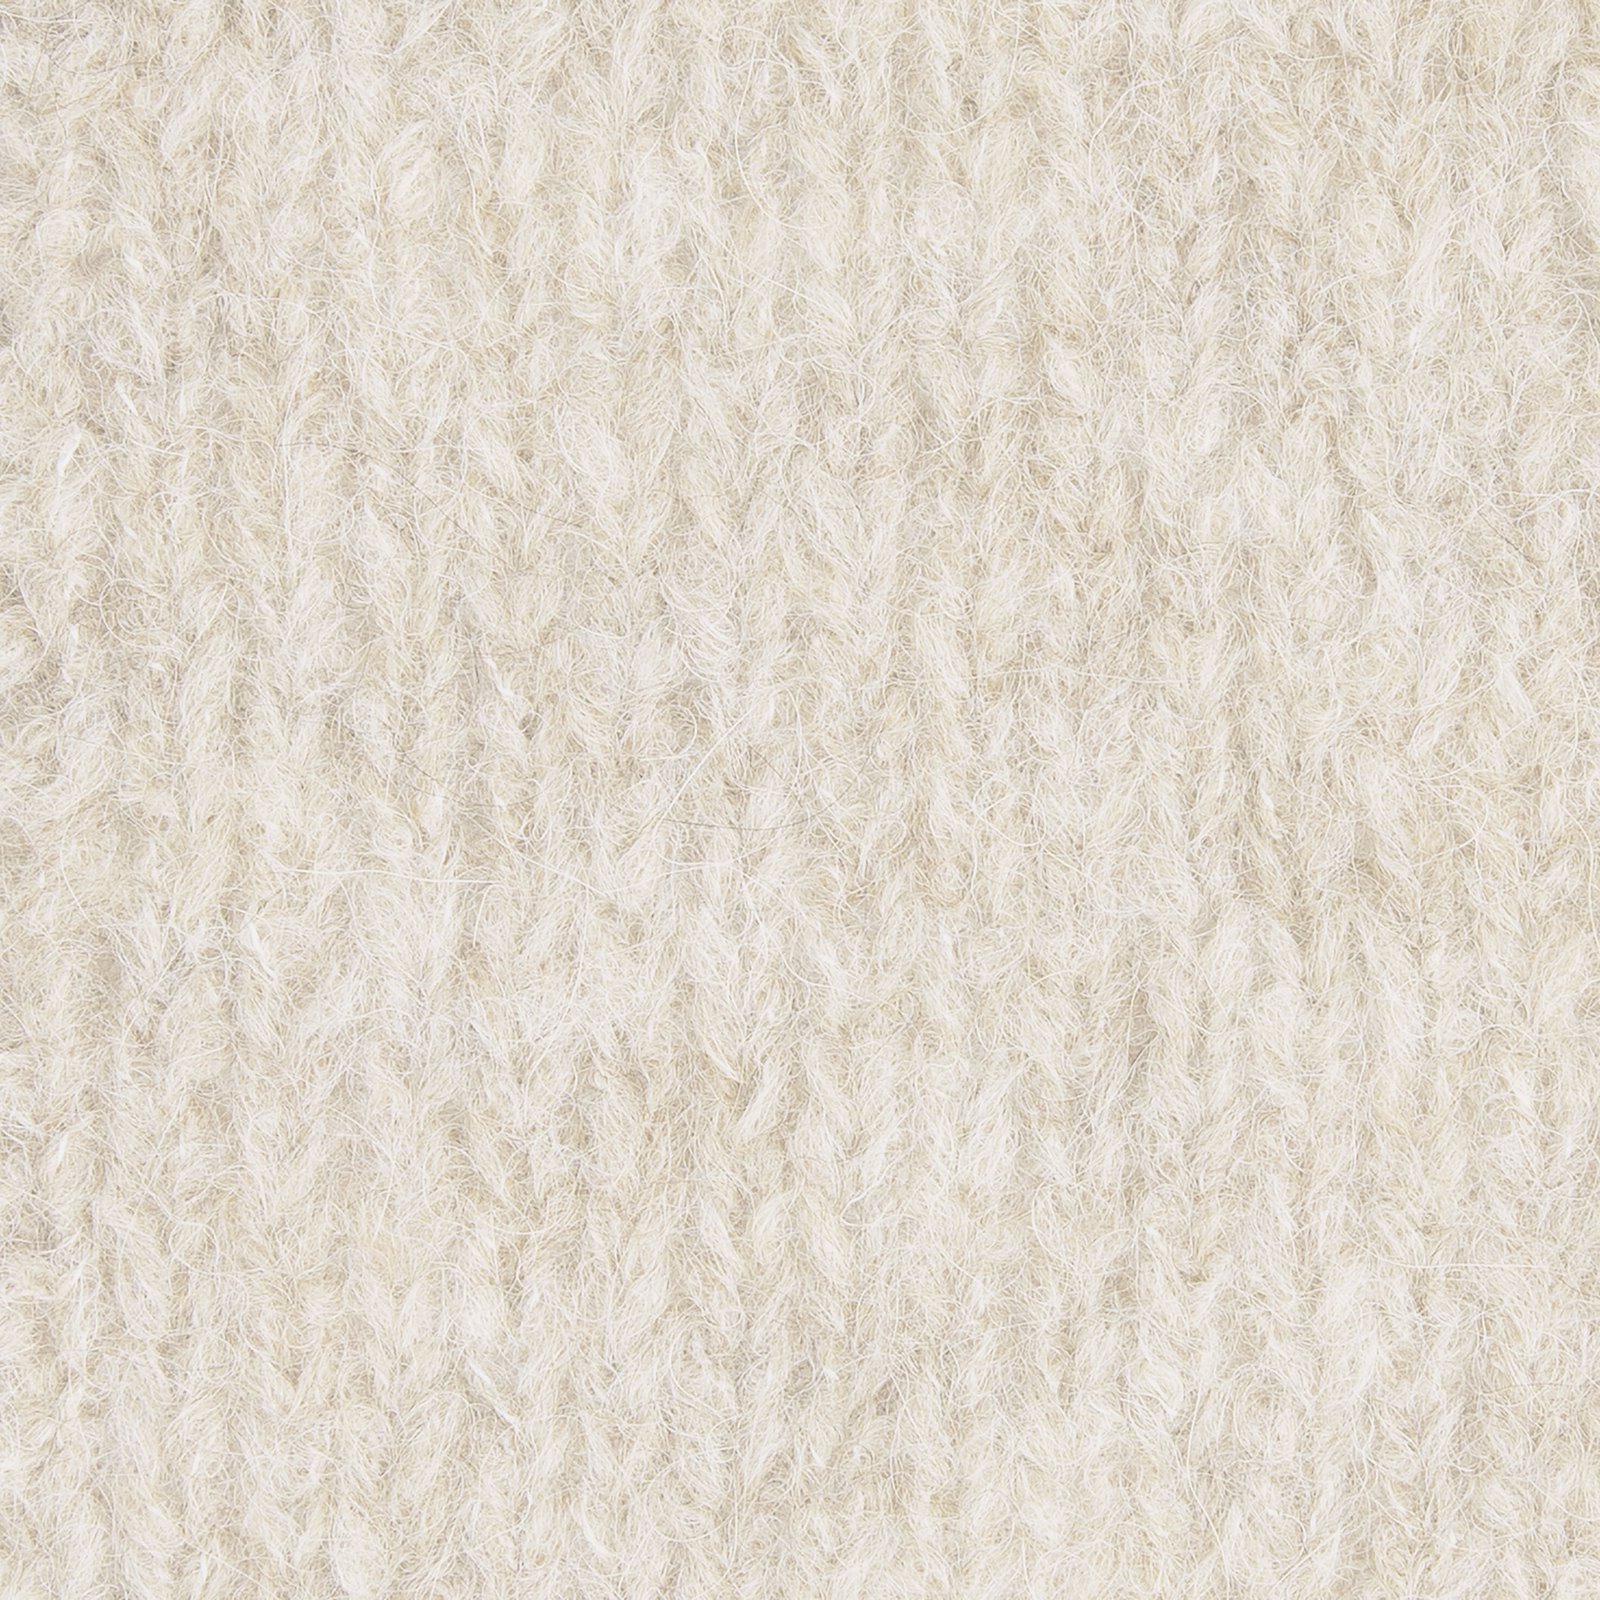 FRAYA, alpacagarn "Fuzzy", off white 90000018_sskit